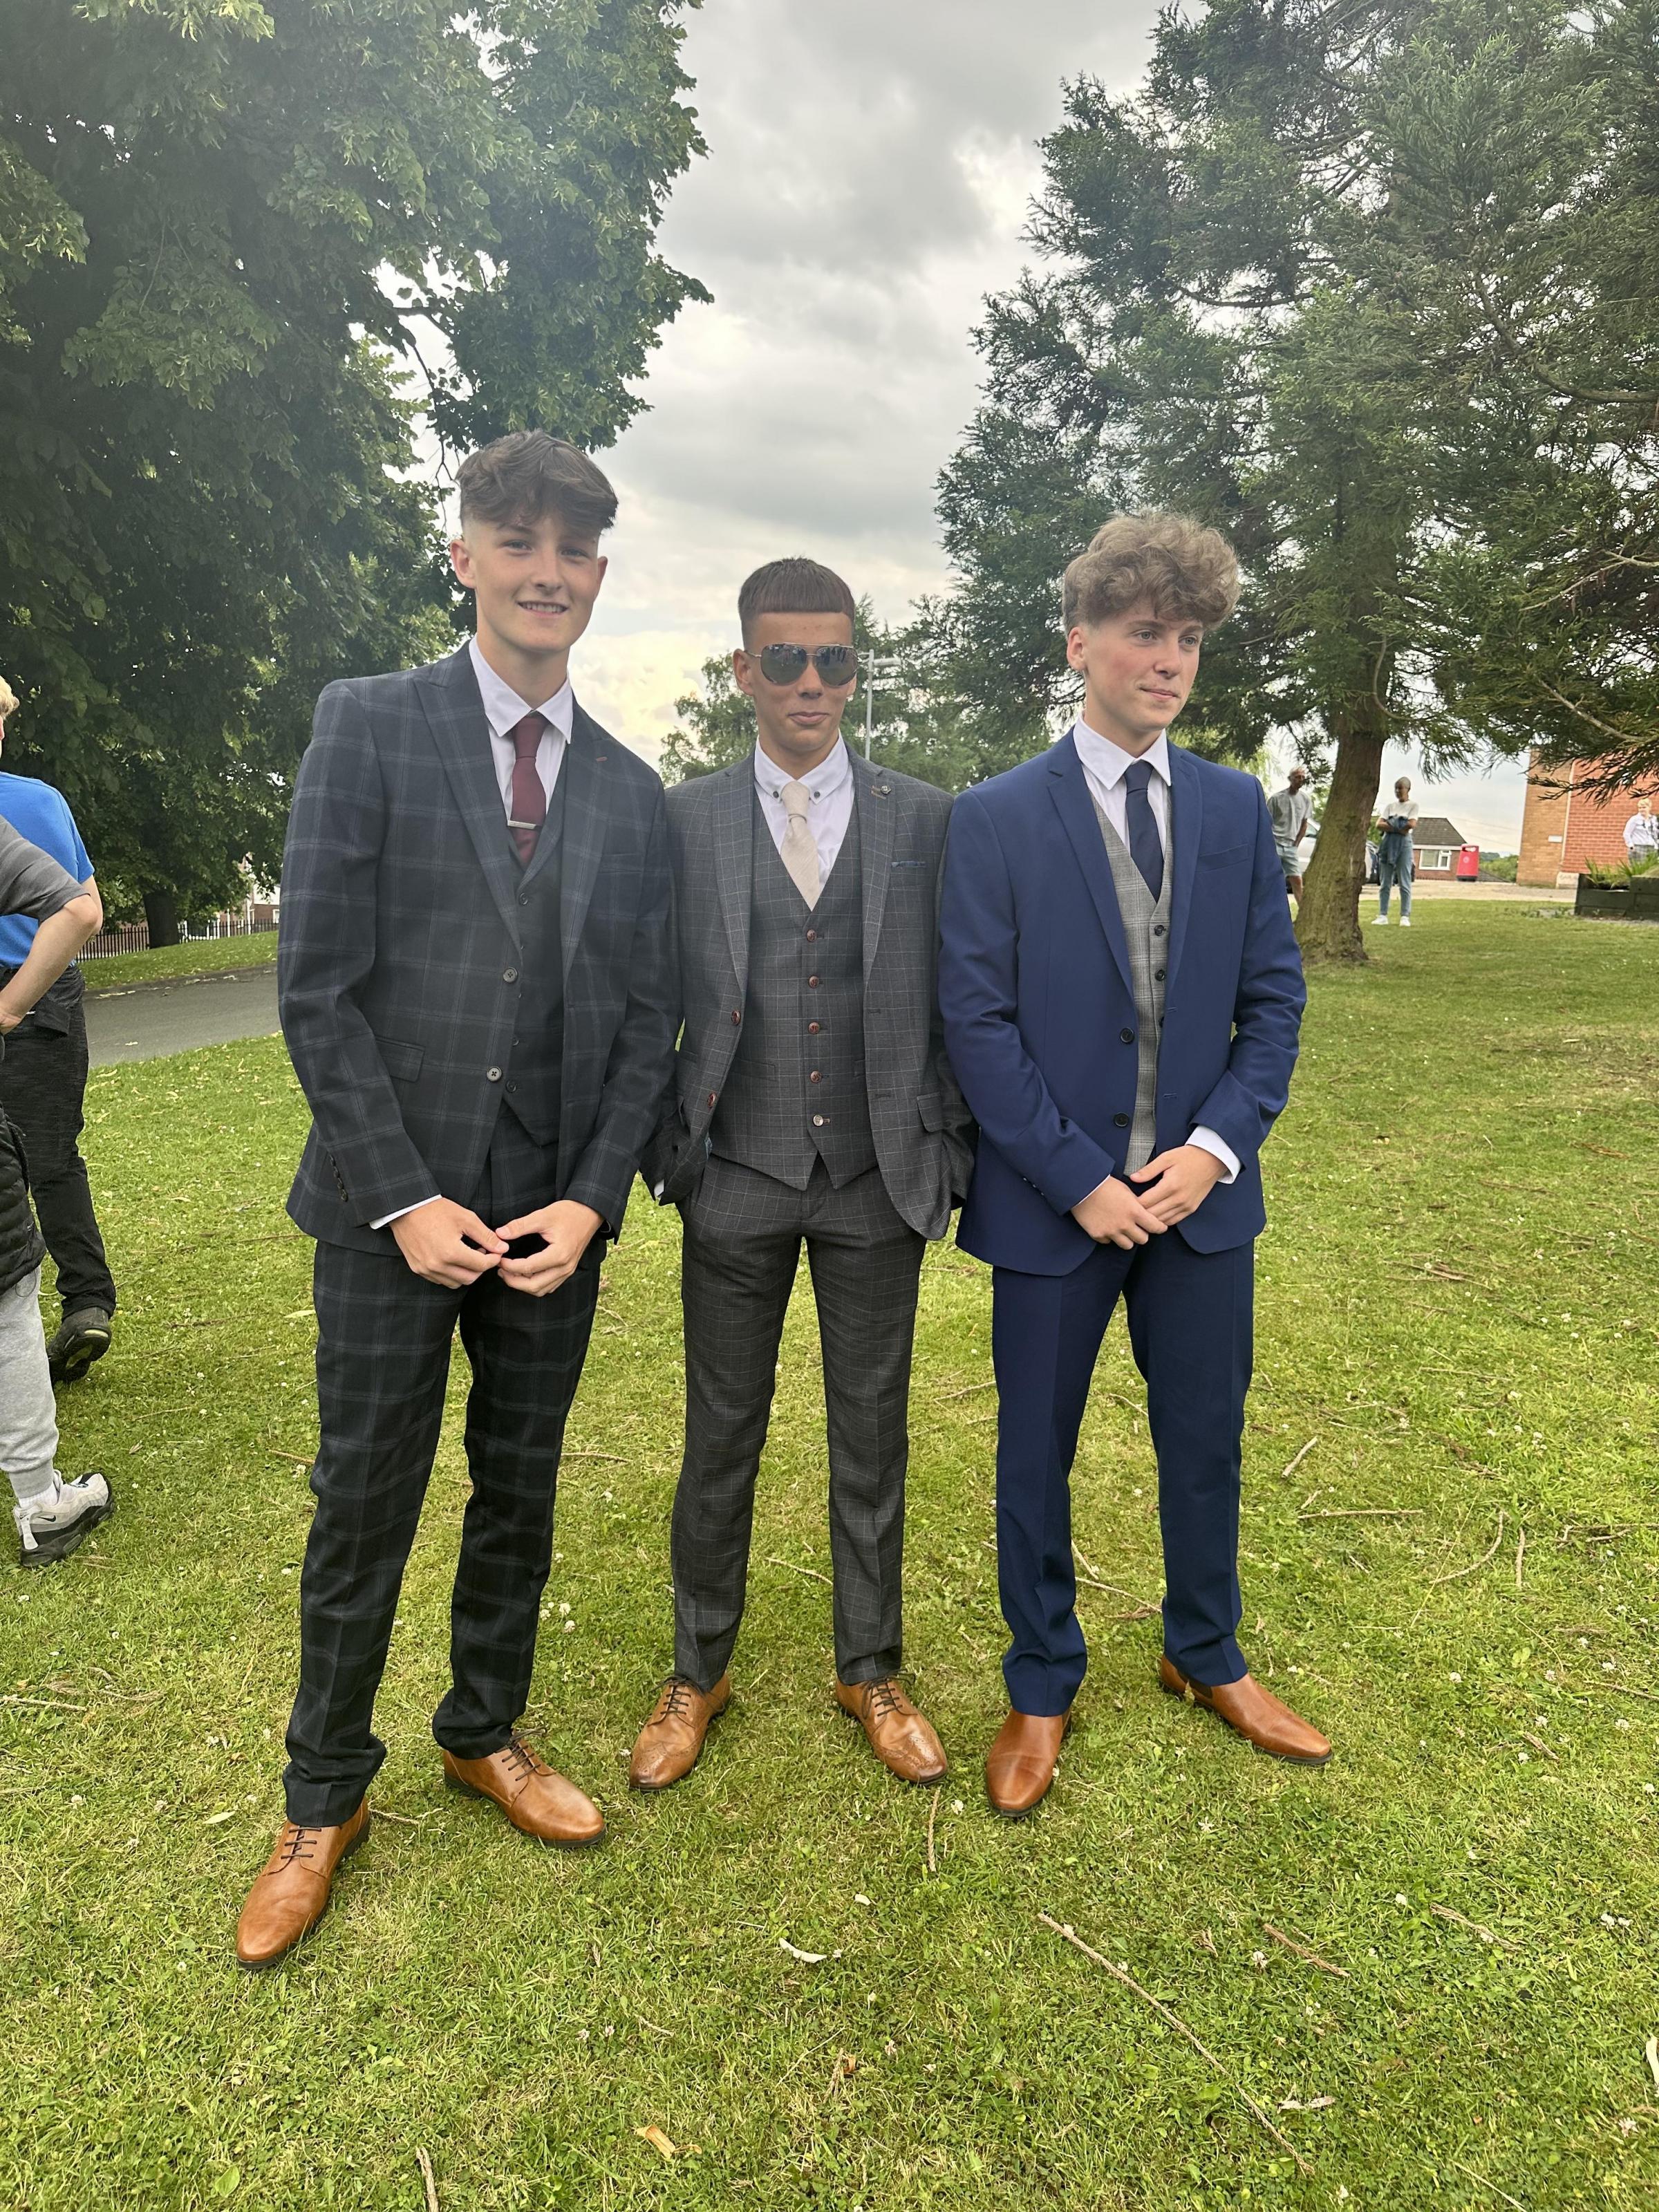 Max Edwards, Aaron Oeheme and Daniel Huxley, prom at Ysgol Rhiwabon.